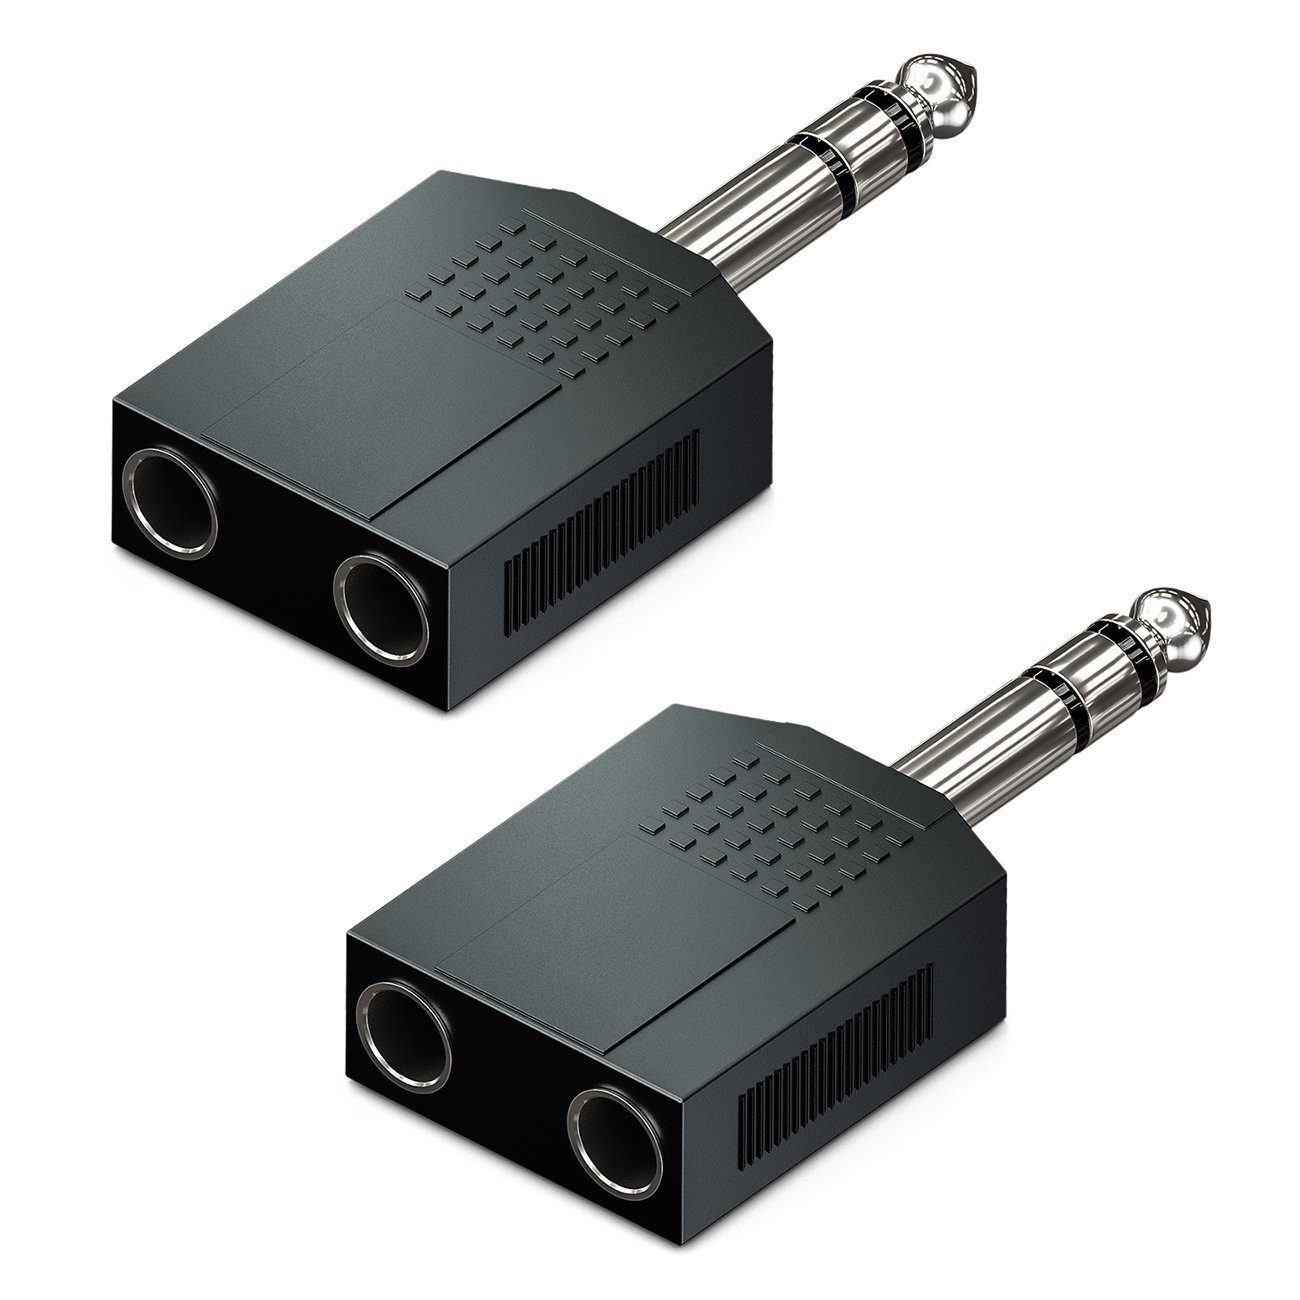 deleyCON »deleyCON 2x 6,3mm Klinke Audio Adapter 6,3mm Klinke Stecker zu 2x  6,3mm Buchse« Notebook-Adapter online kaufen | OTTO